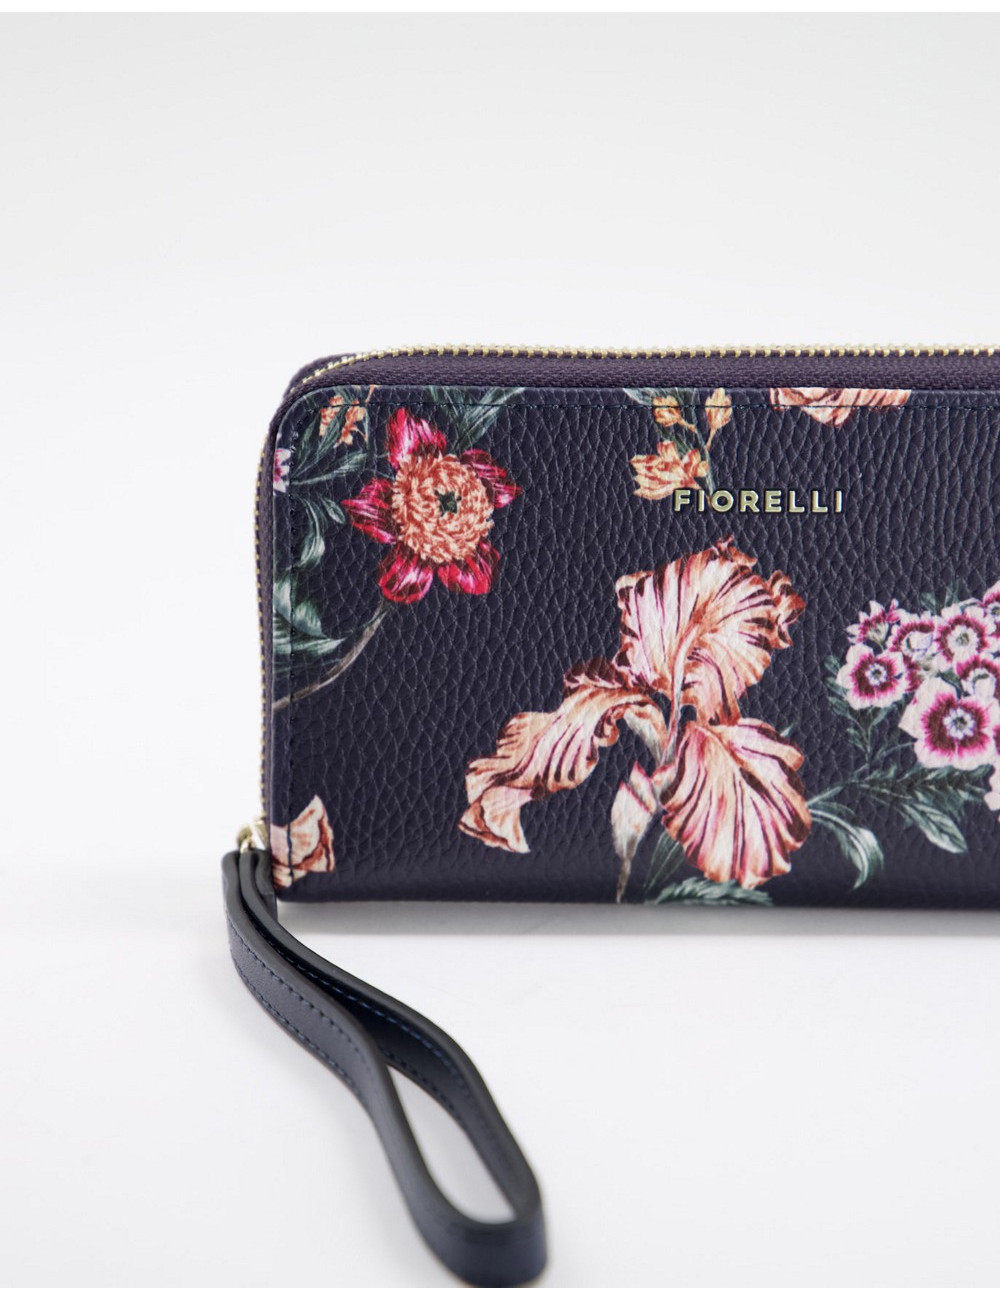 Fiorelli finley purse in...